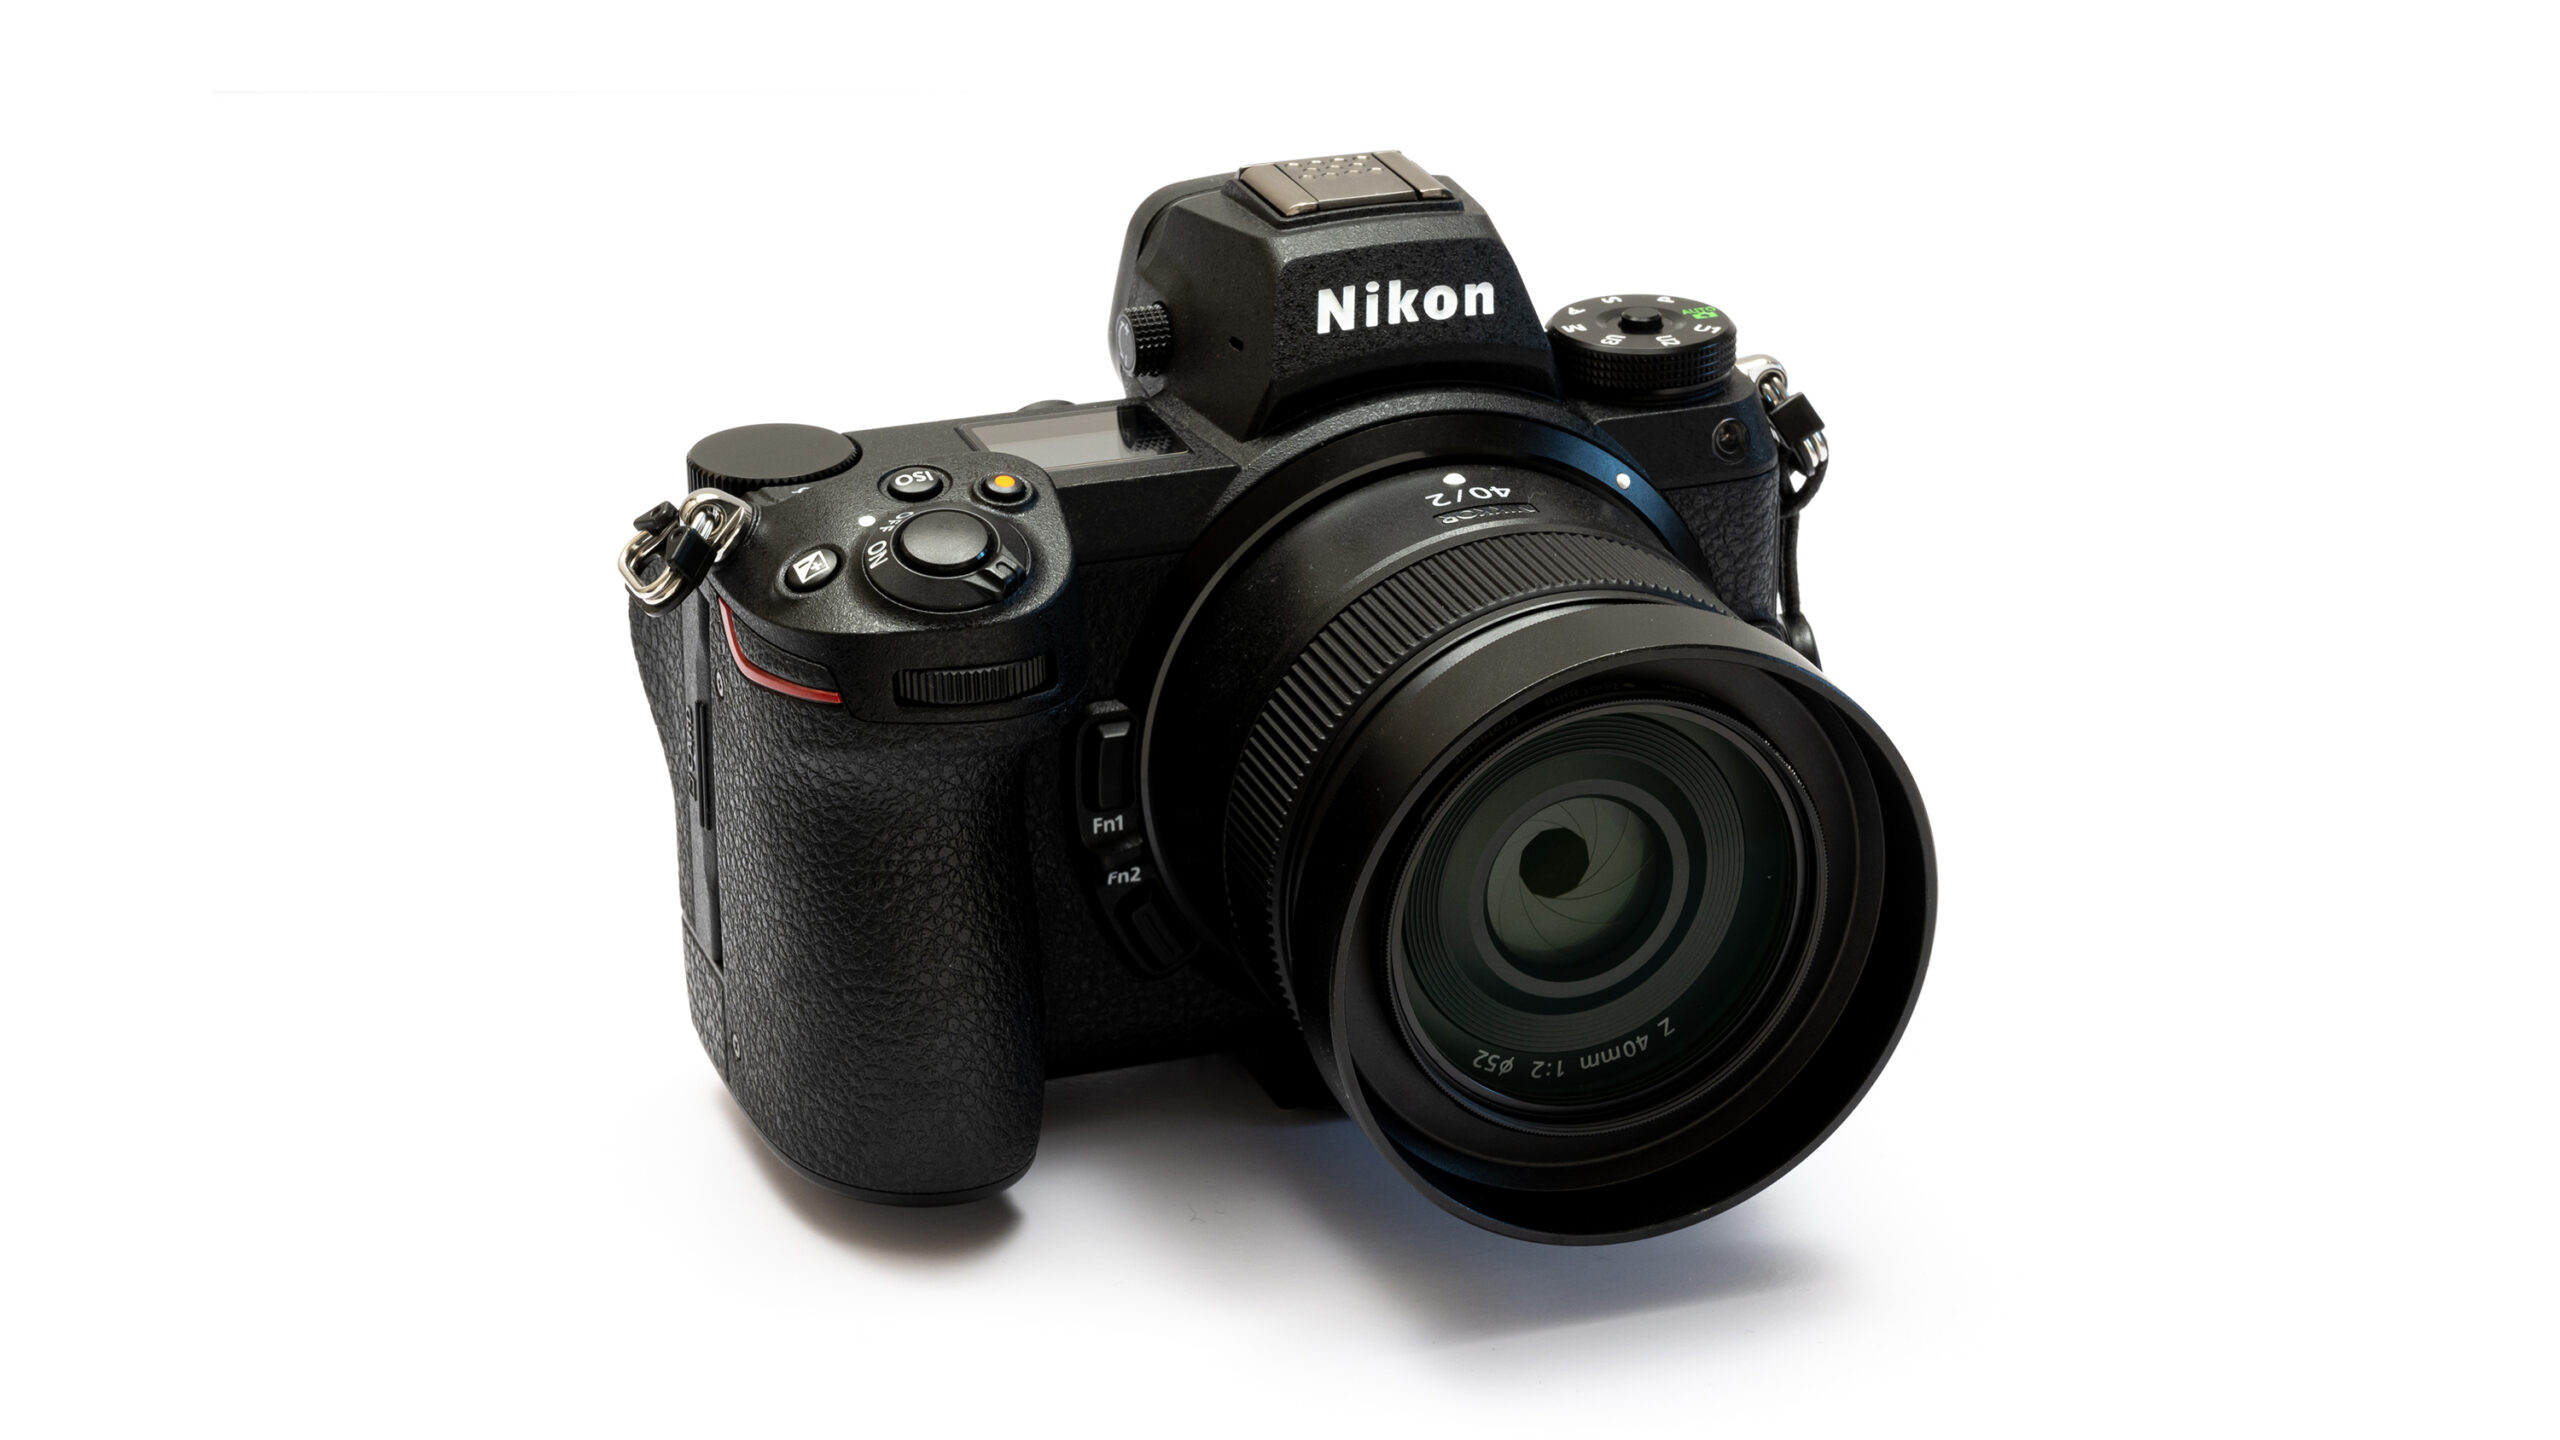 セレクトショップ購入 NIKKOR Z 40mm f2 ニコン 単焦点レンズ レンズ(単焦点)